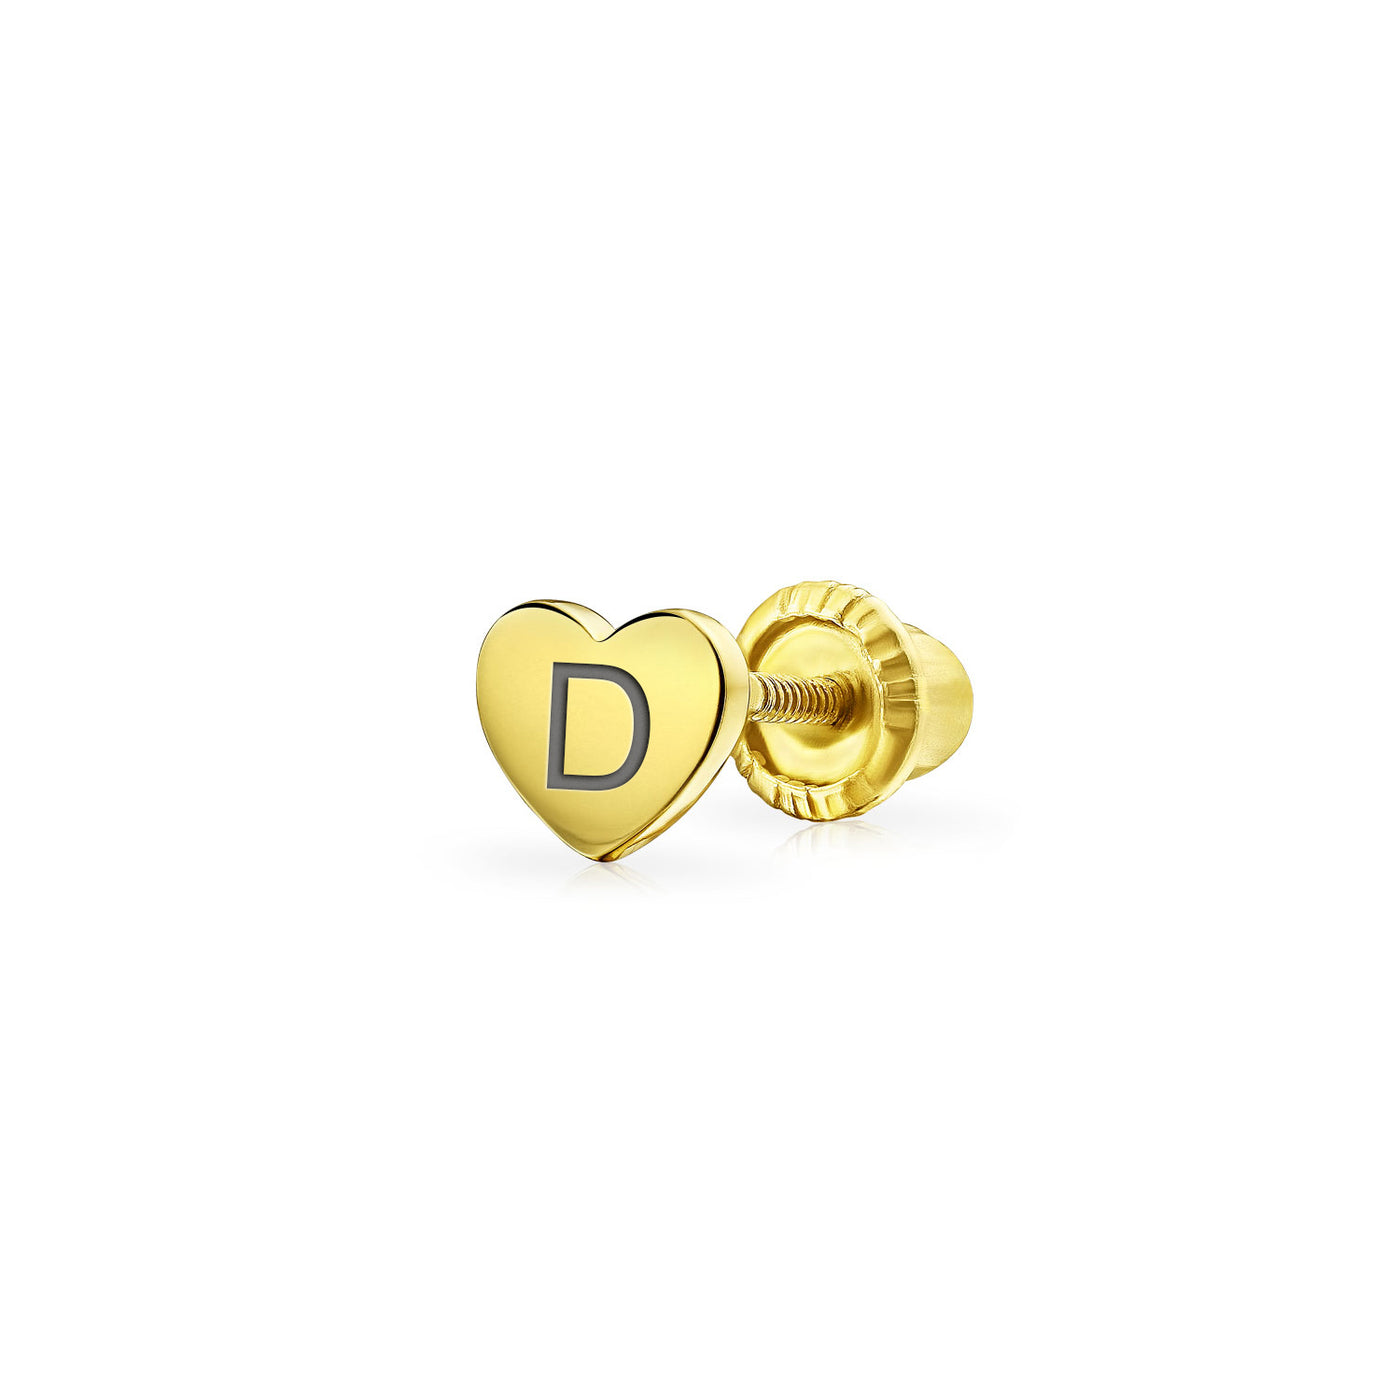 Gold D